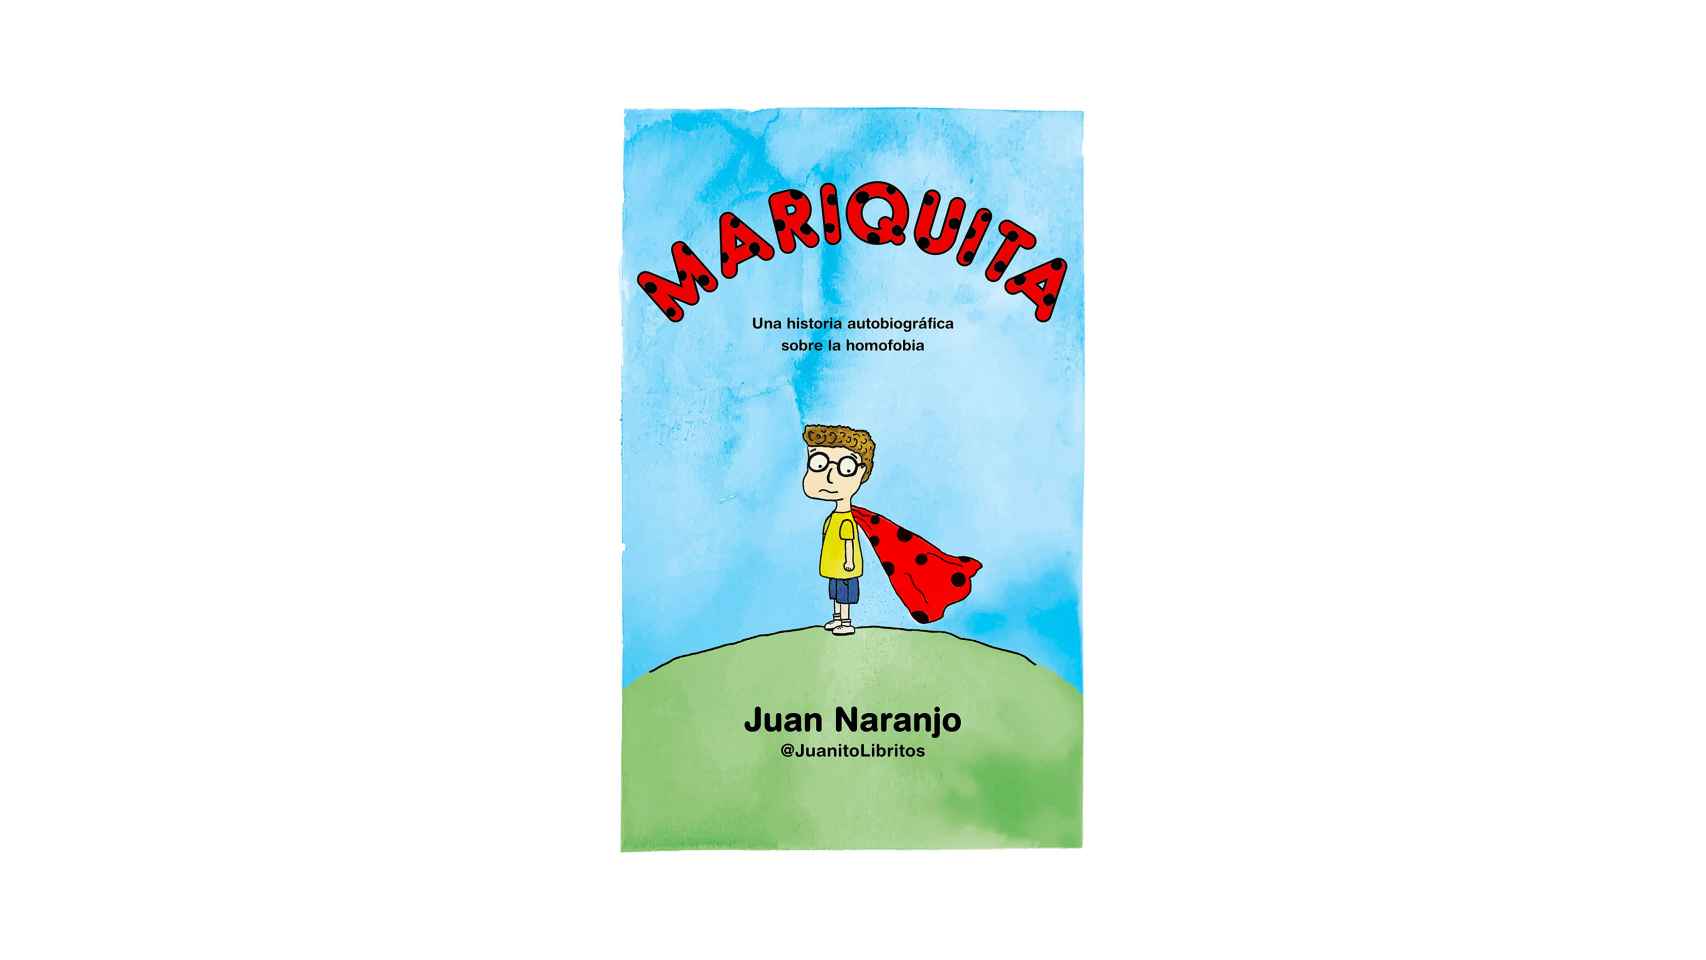 Mariquita: Una historia autobiográfica sobre la homofobia, Juan Naranjo